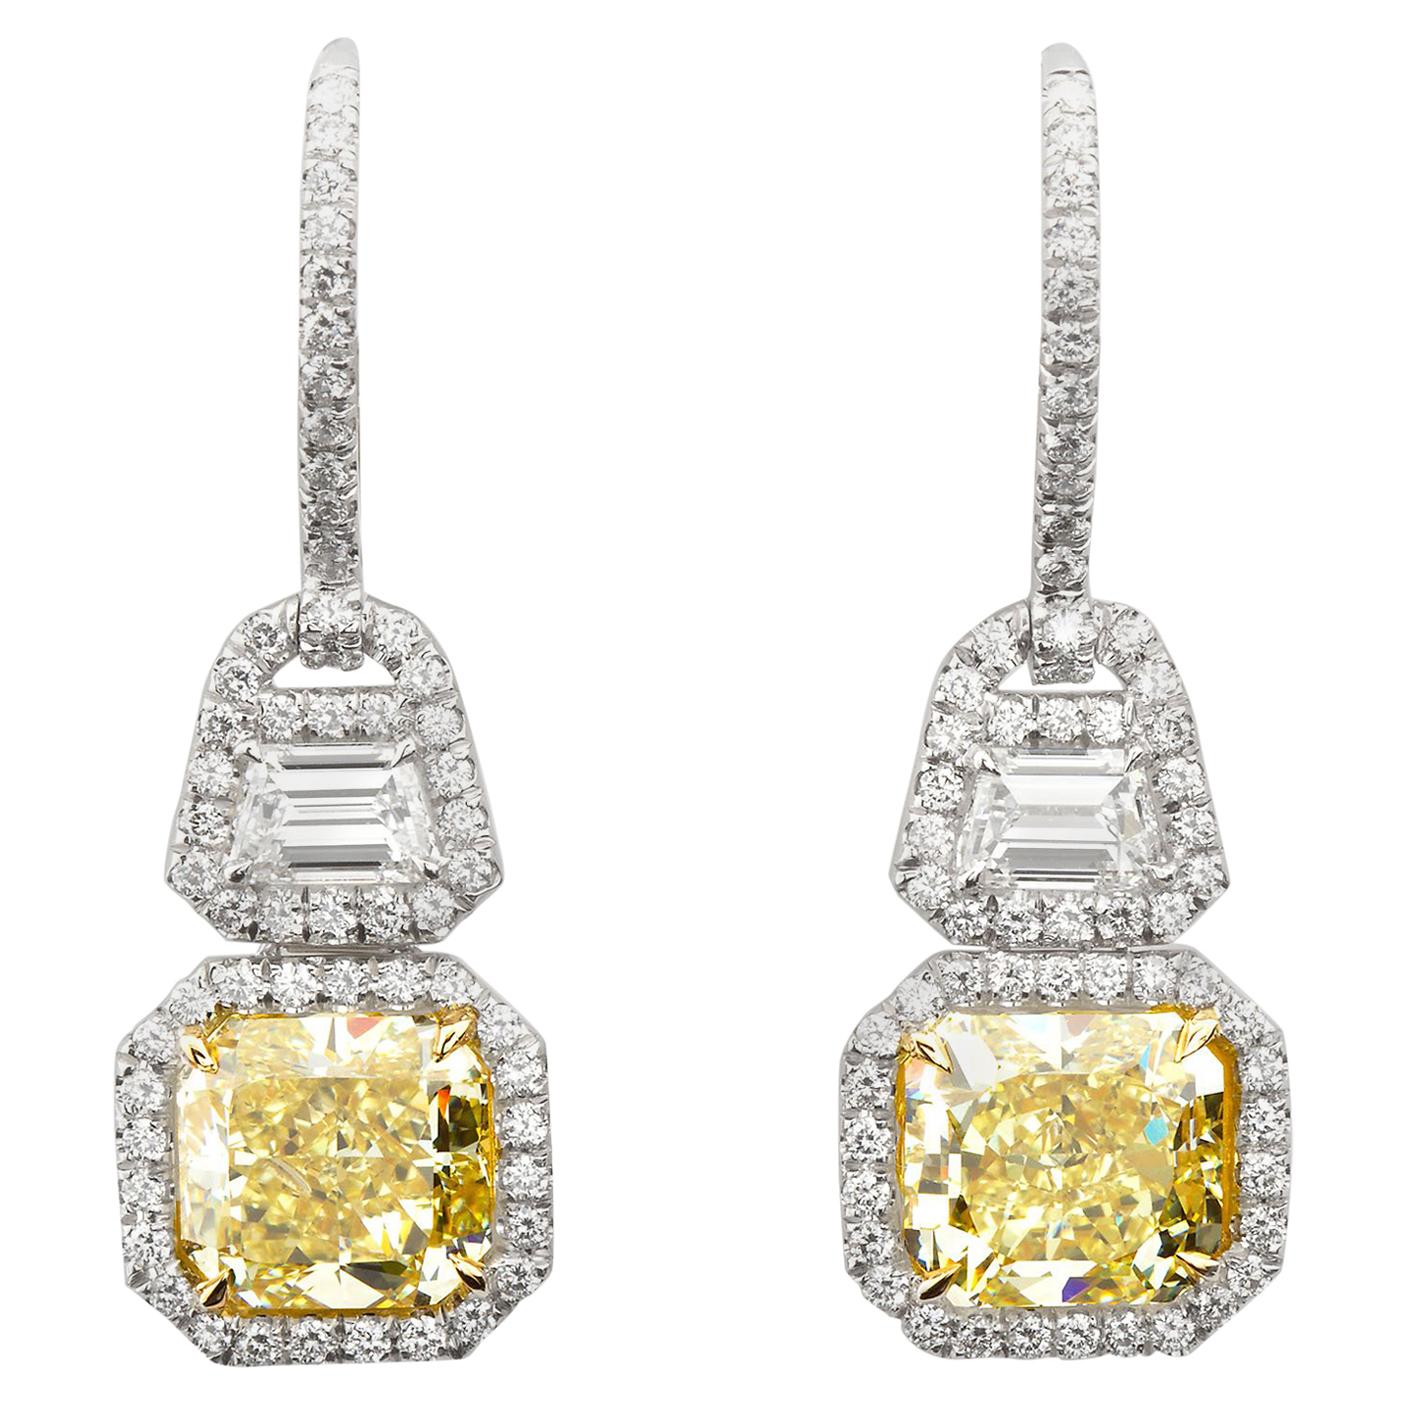 6.05 Carat Fancy Yellow Radiant Cut Diamond Dangle Earrings GIA